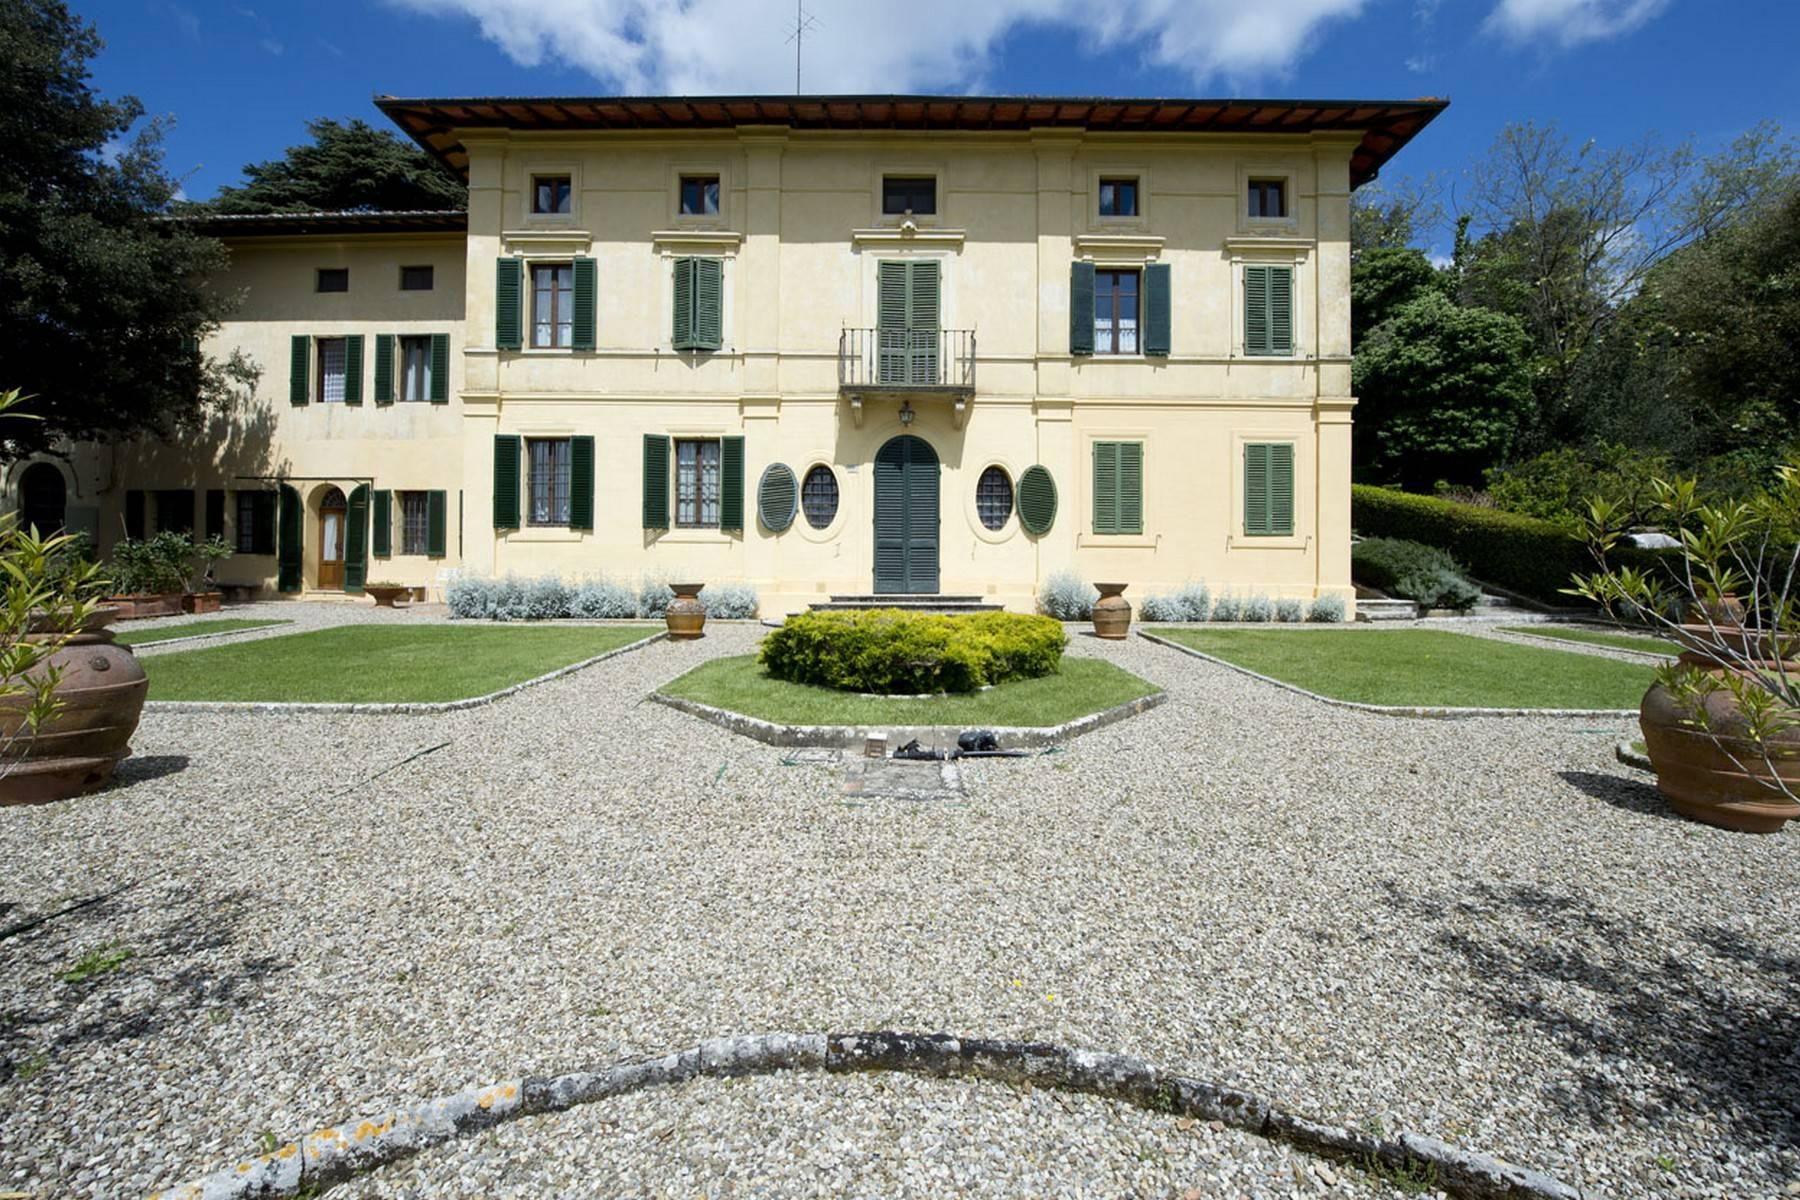 Villa aristocratique à vendre sur les collines de Sienne - 1